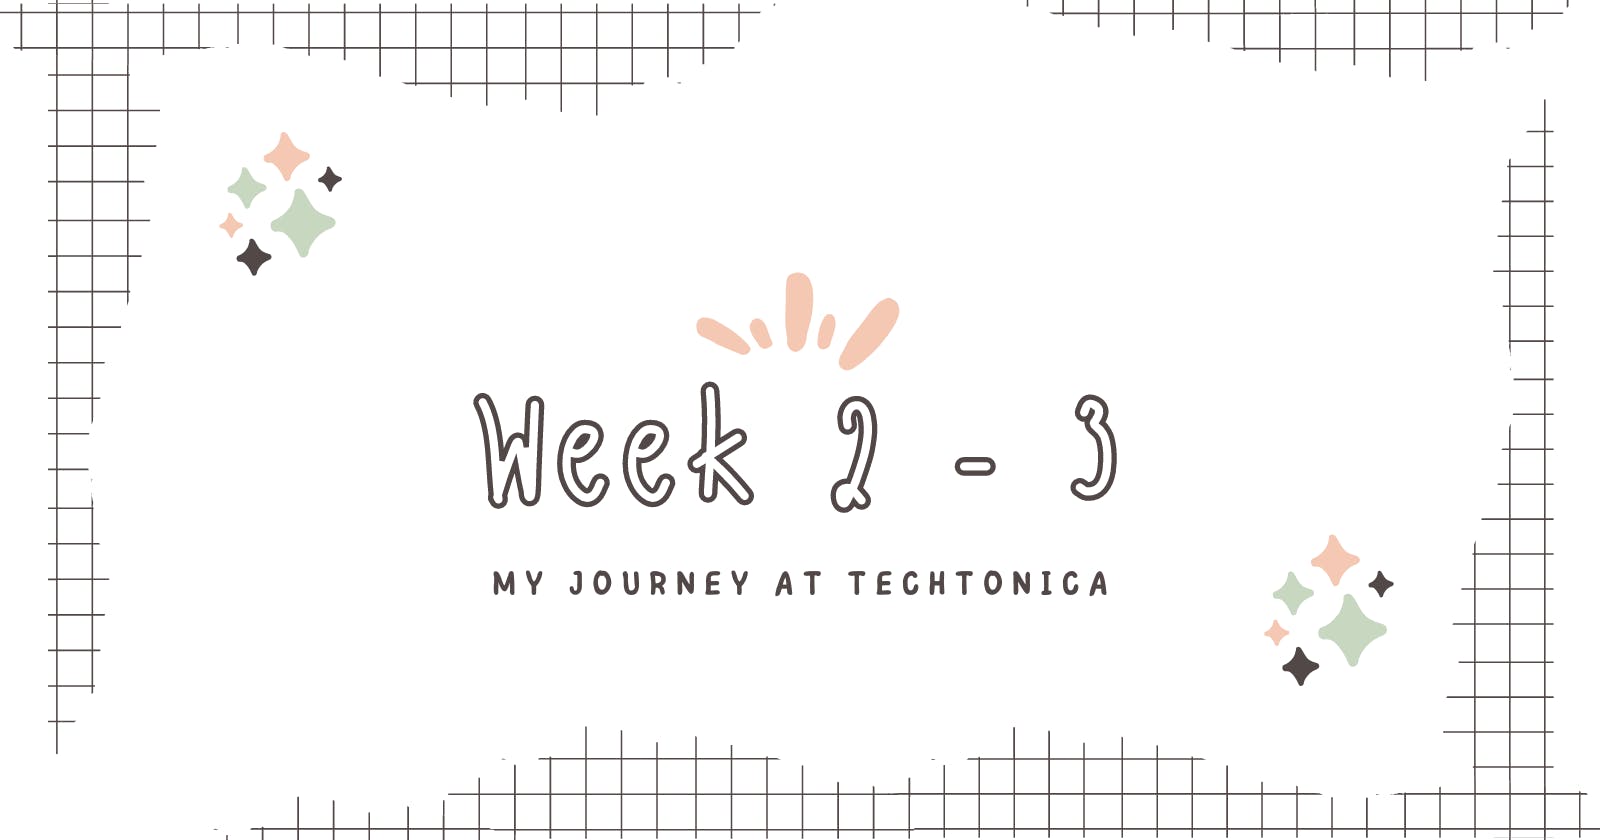 My Journey at Techtonica: Week 2 - Week 3